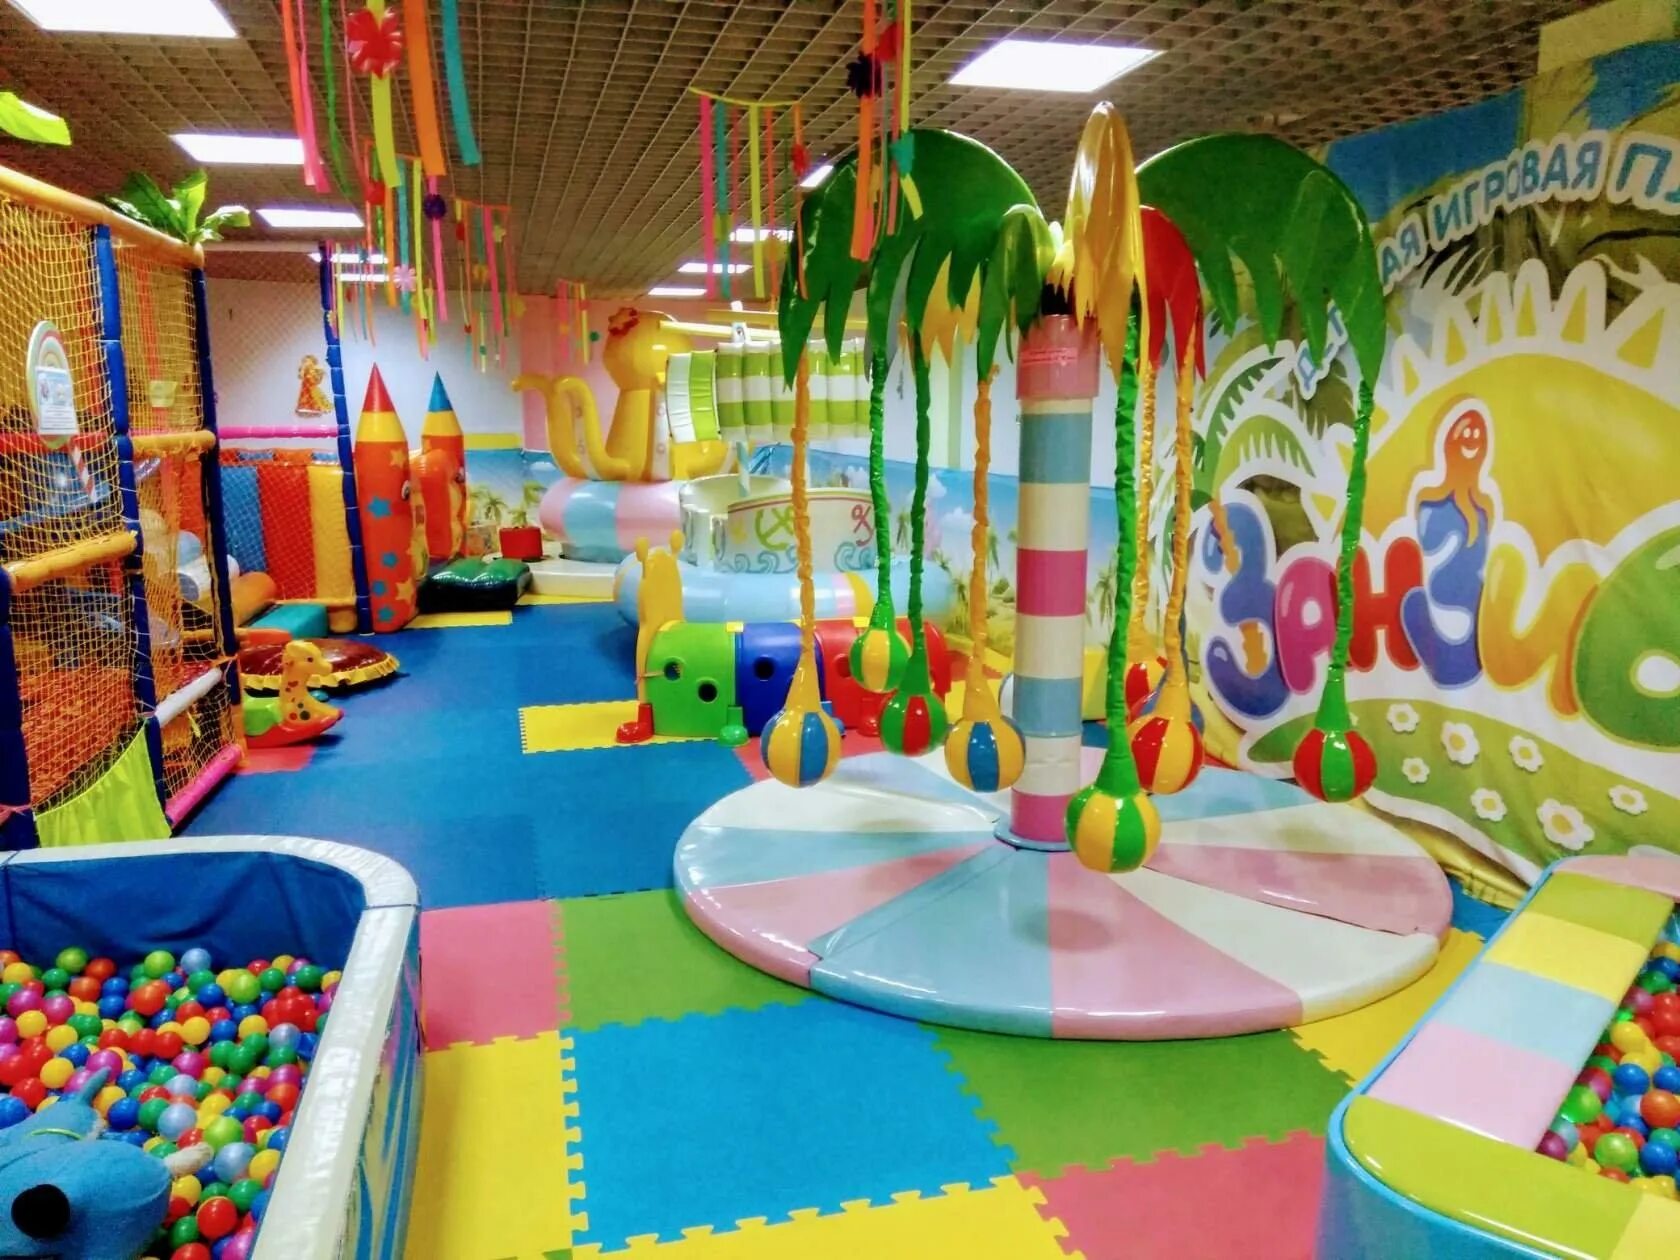 Развлекательный центр "детская игровой центр сказка" Динская. Игровая комната для детей. Детские развлекательные комнаты. Детские щавлекательные комната.